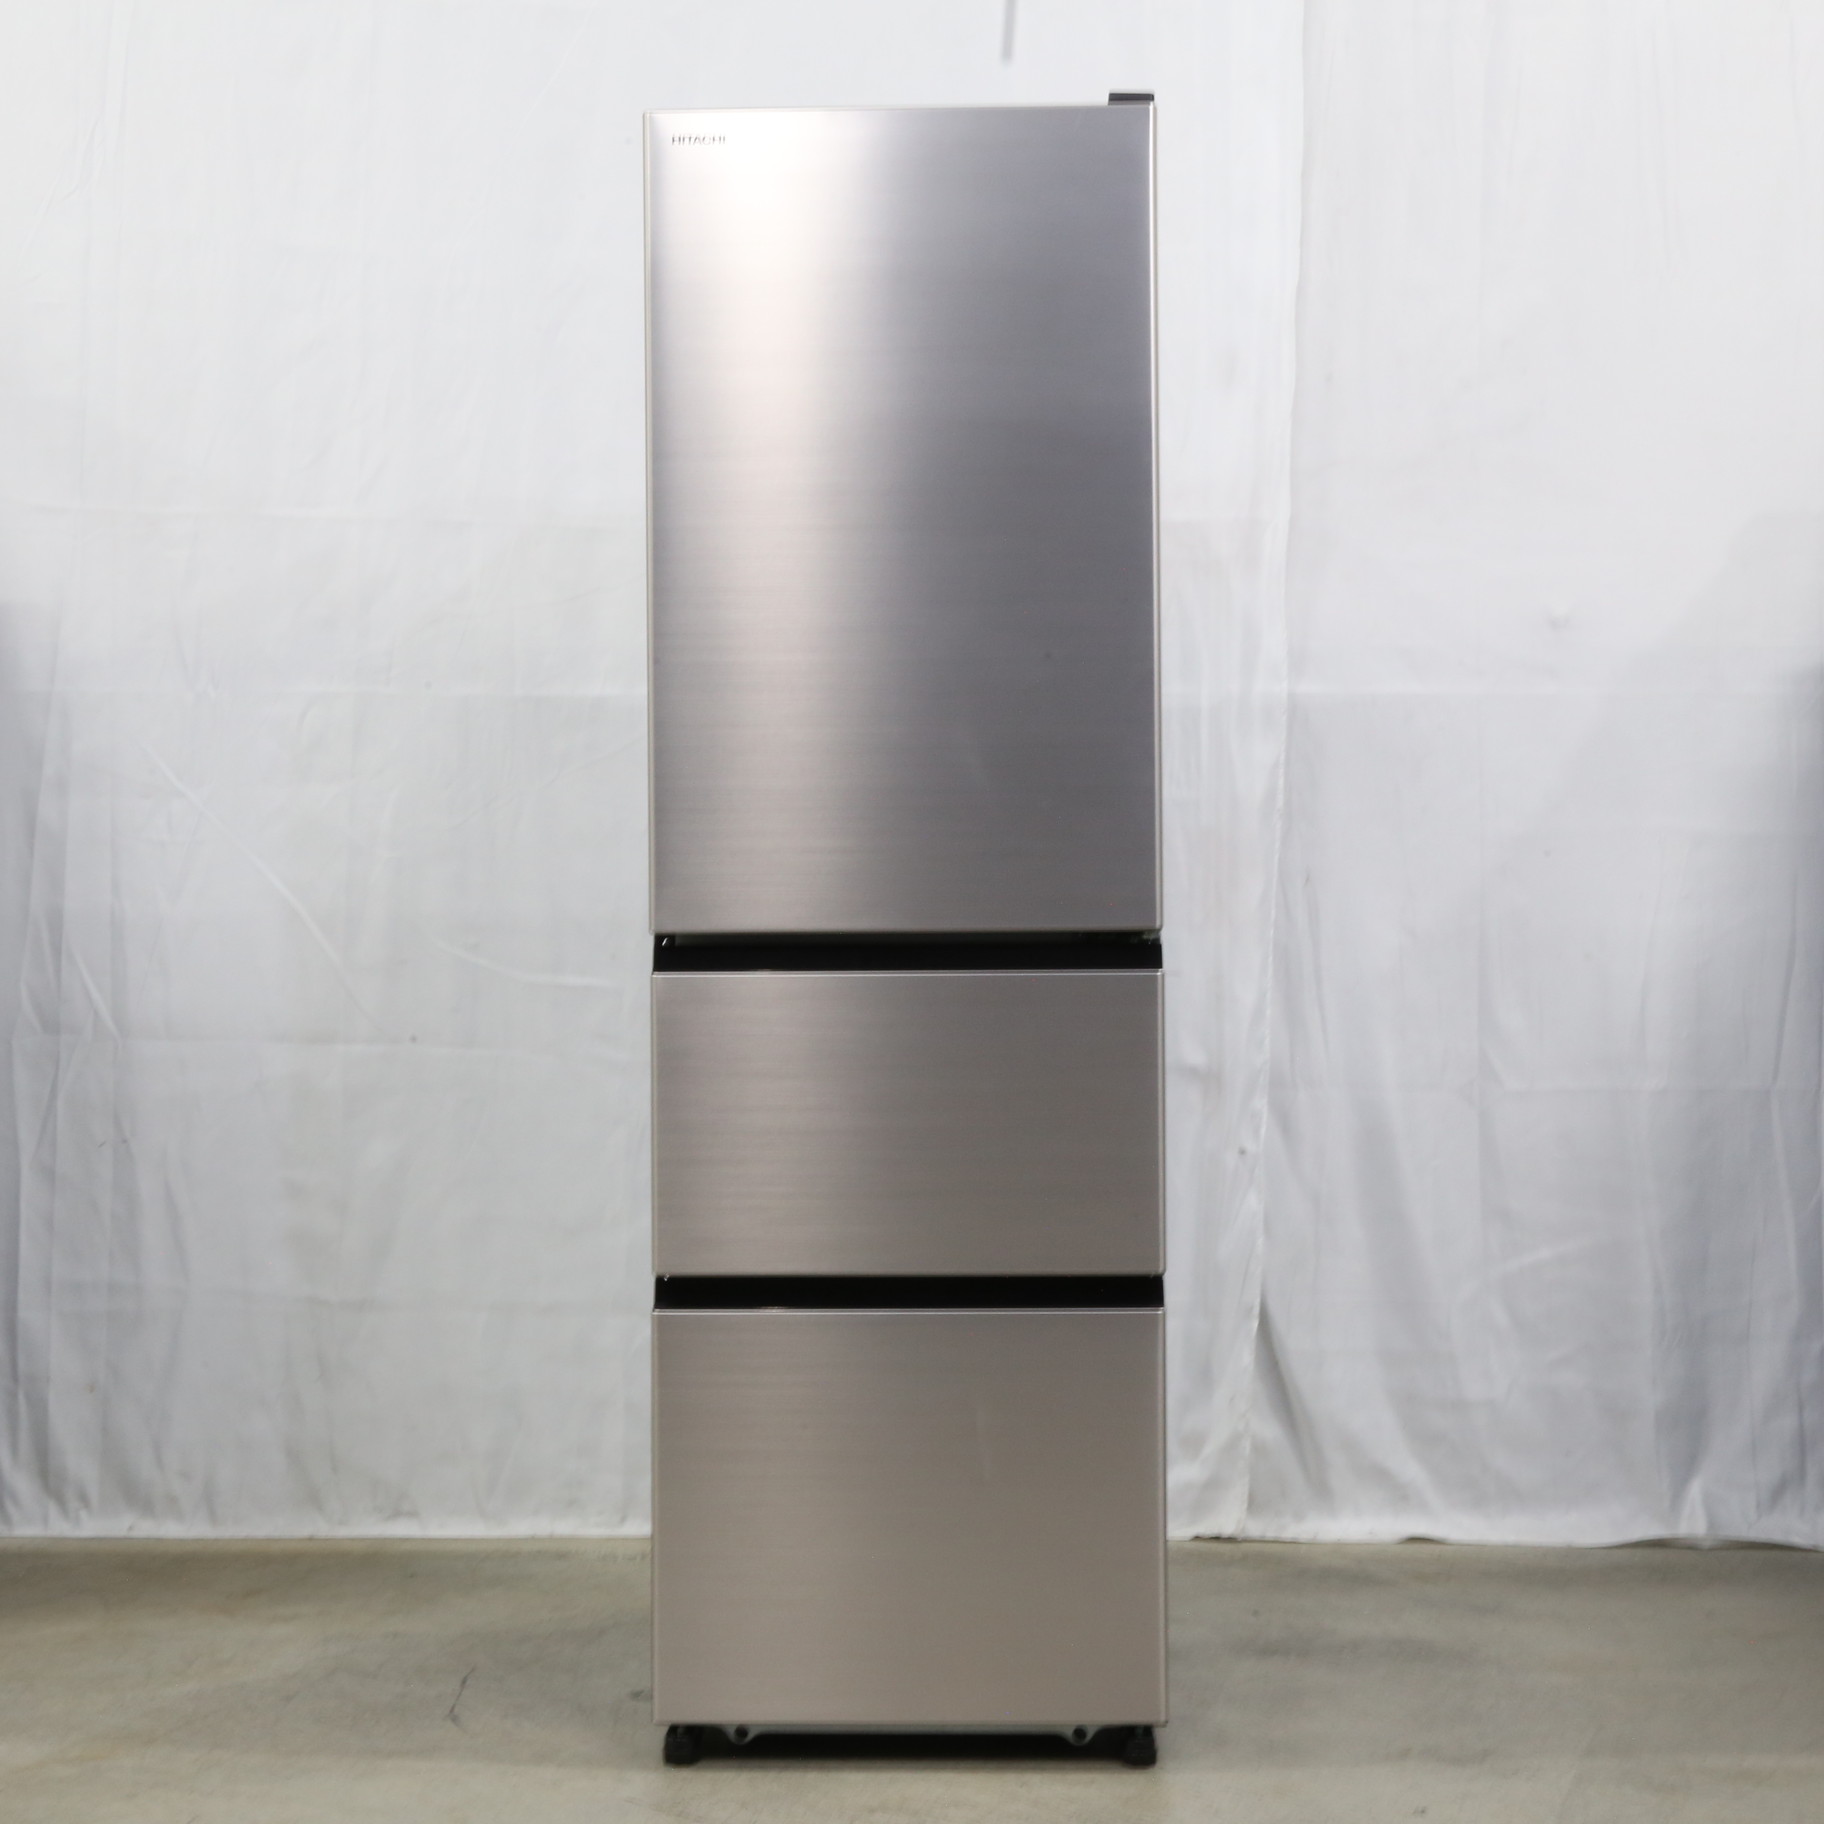 【送料無料】 HITACHI 日立 3ドア冷蔵庫 R-V32KV 幅54cm